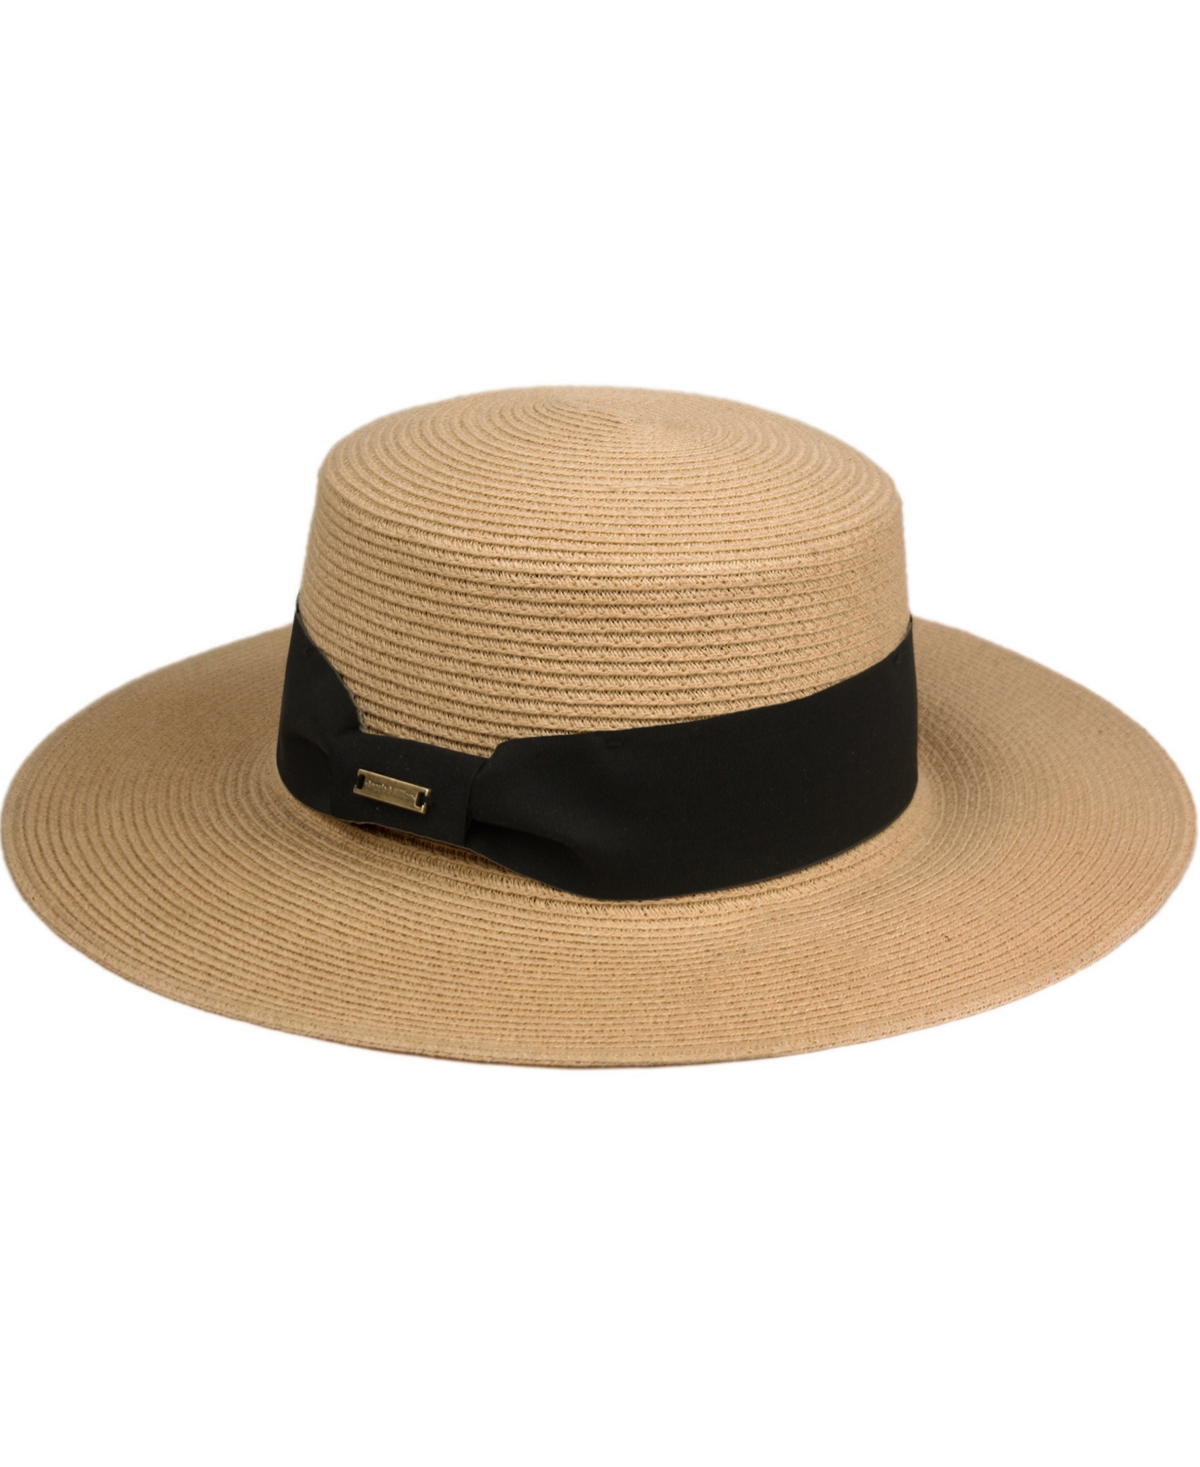 Shop Angela & William Unisex Flat Brim Boater Straw Sun Hat In Light Brown